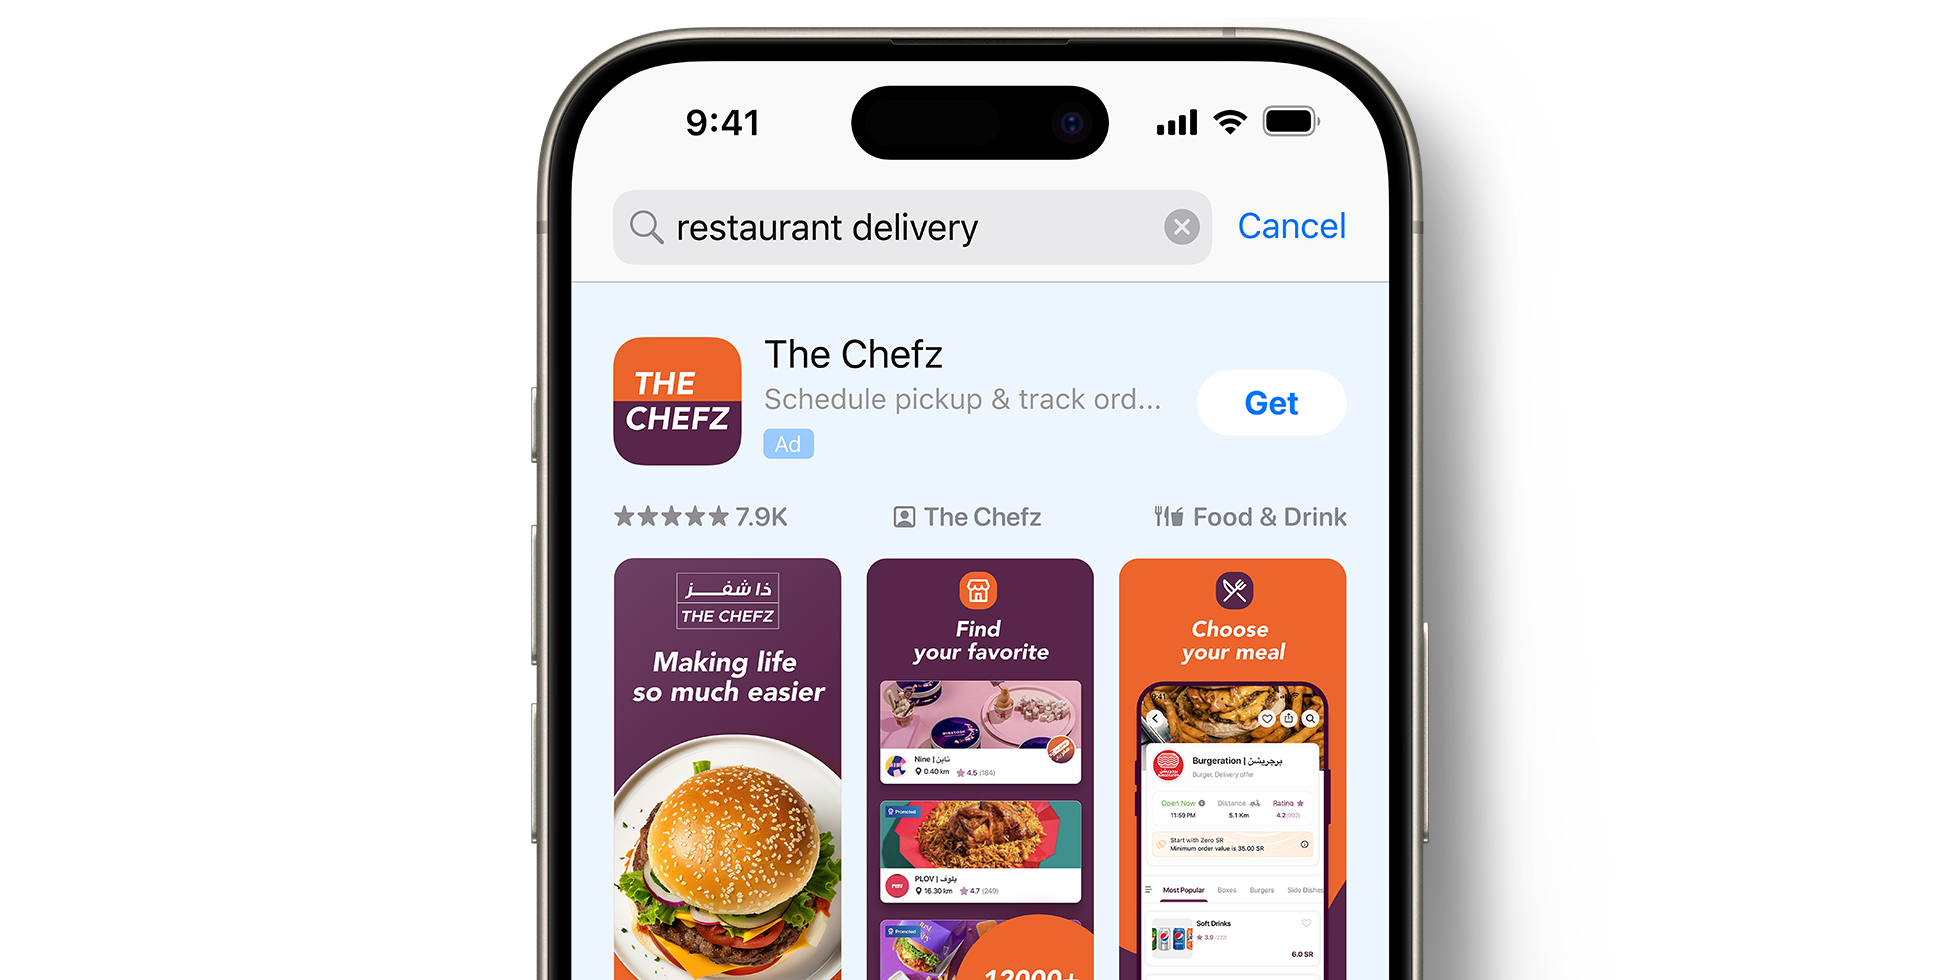 El anuncio de The Chefz en el App Store